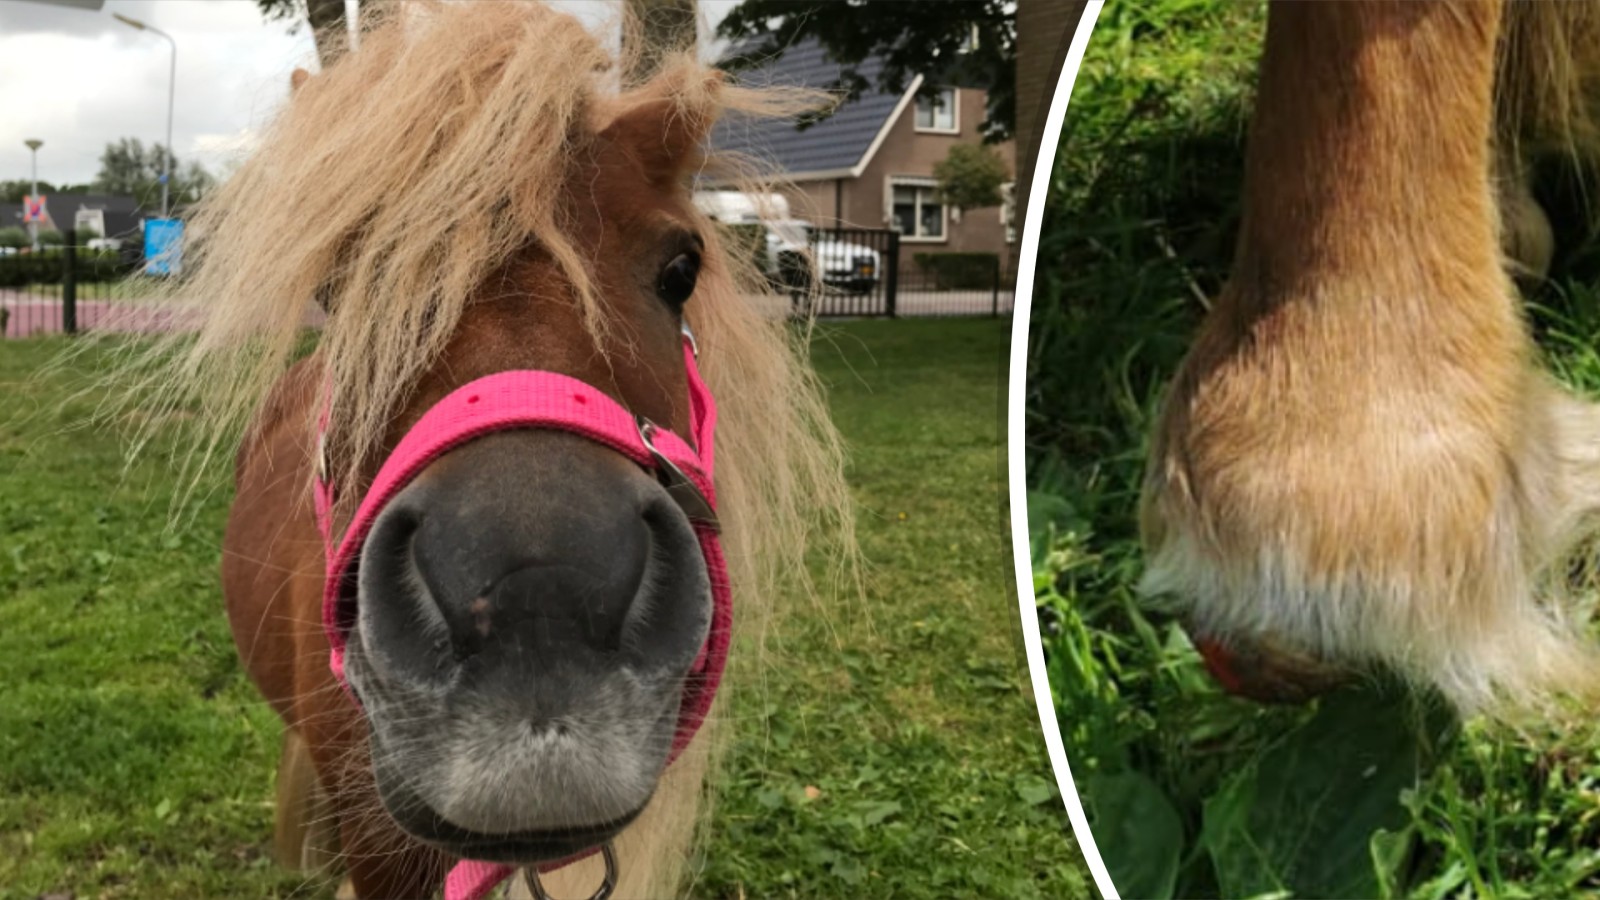 oogsten taart zin Vriendinnen Vanessa en Yvonne proberen pasgekochte pony te redden: "Ze  heeft veel pijn" - NH Nieuws